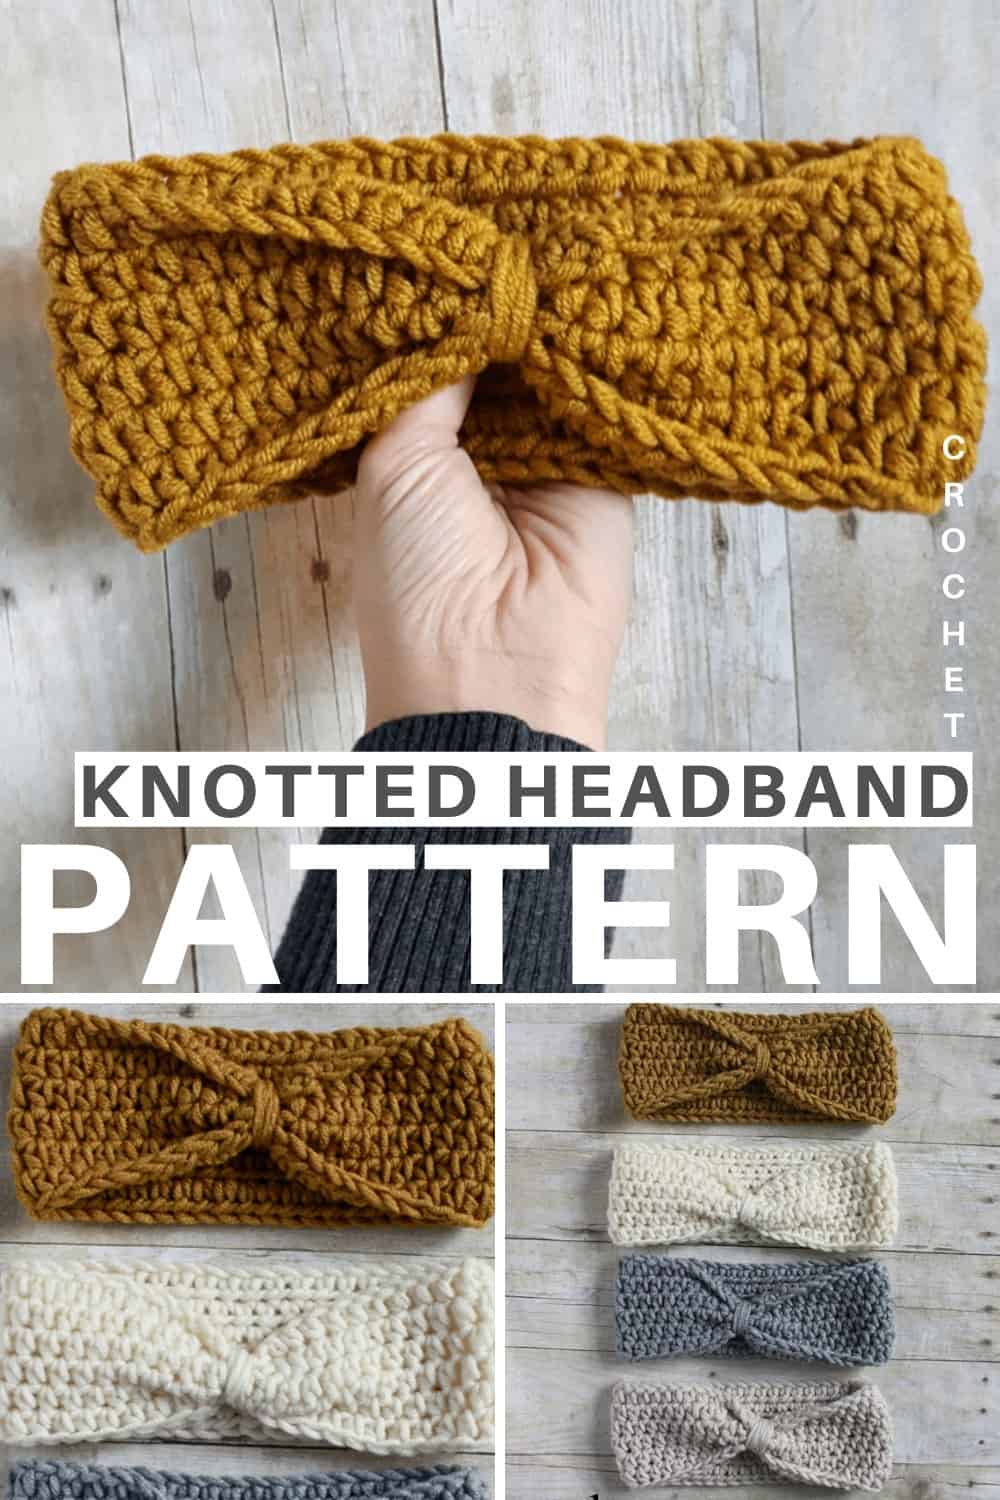 Knotted Headband Crochet Pattern